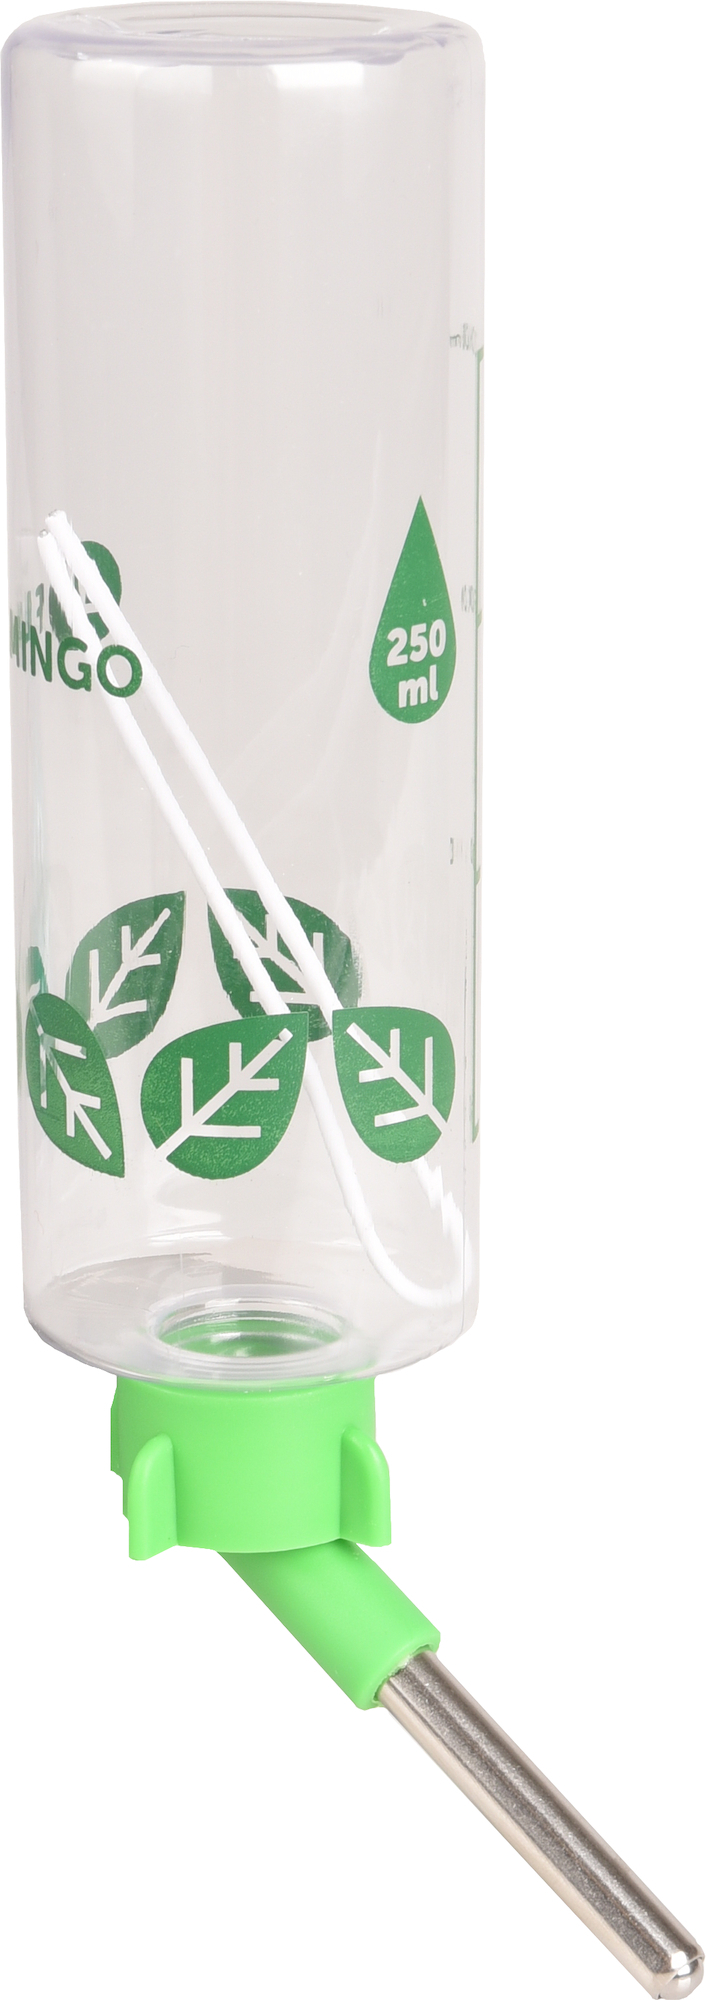 Biberão/bebedouro de plástico verde/transparente para roedores